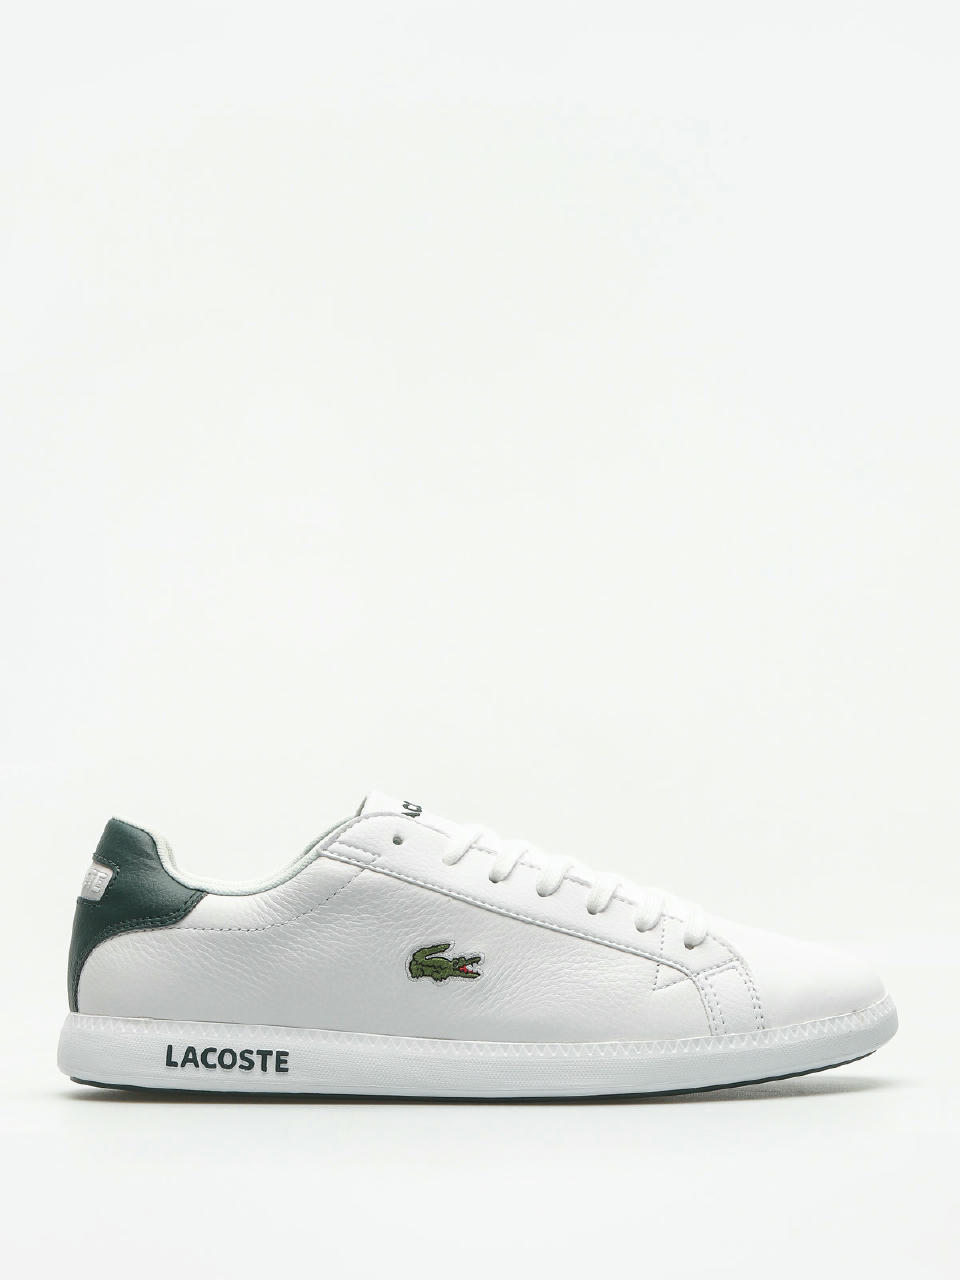 Anvendelse døråbning spray Lacoste Shoes Graduate Lcr3 118 1 (white/dark green)